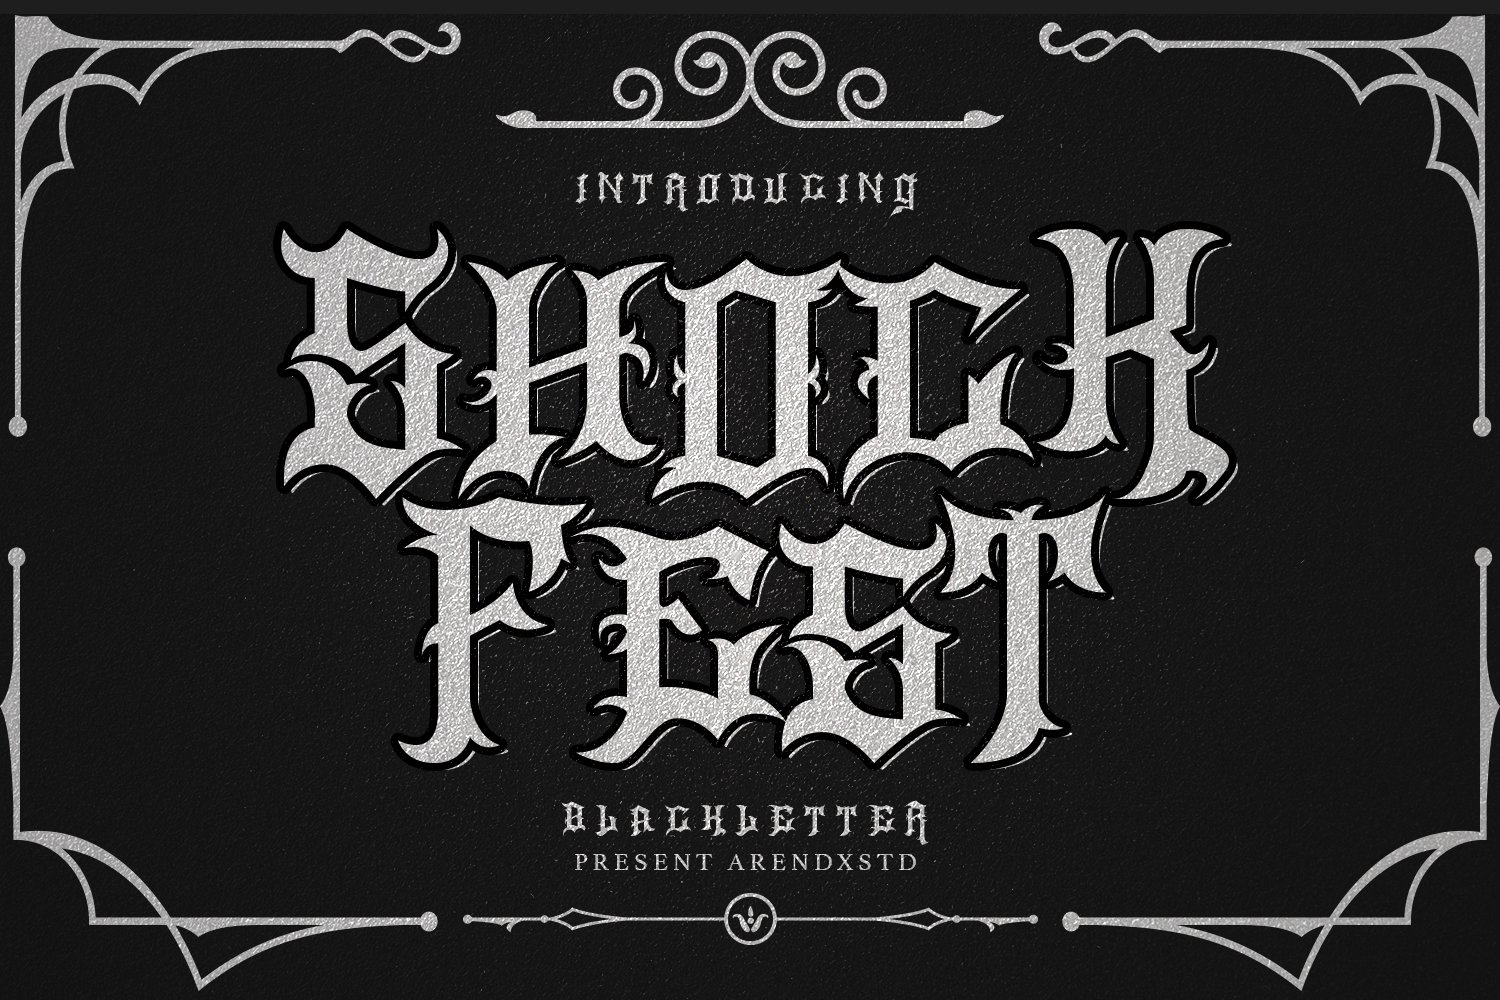 Shock Fest - Blackletter Font cover image.